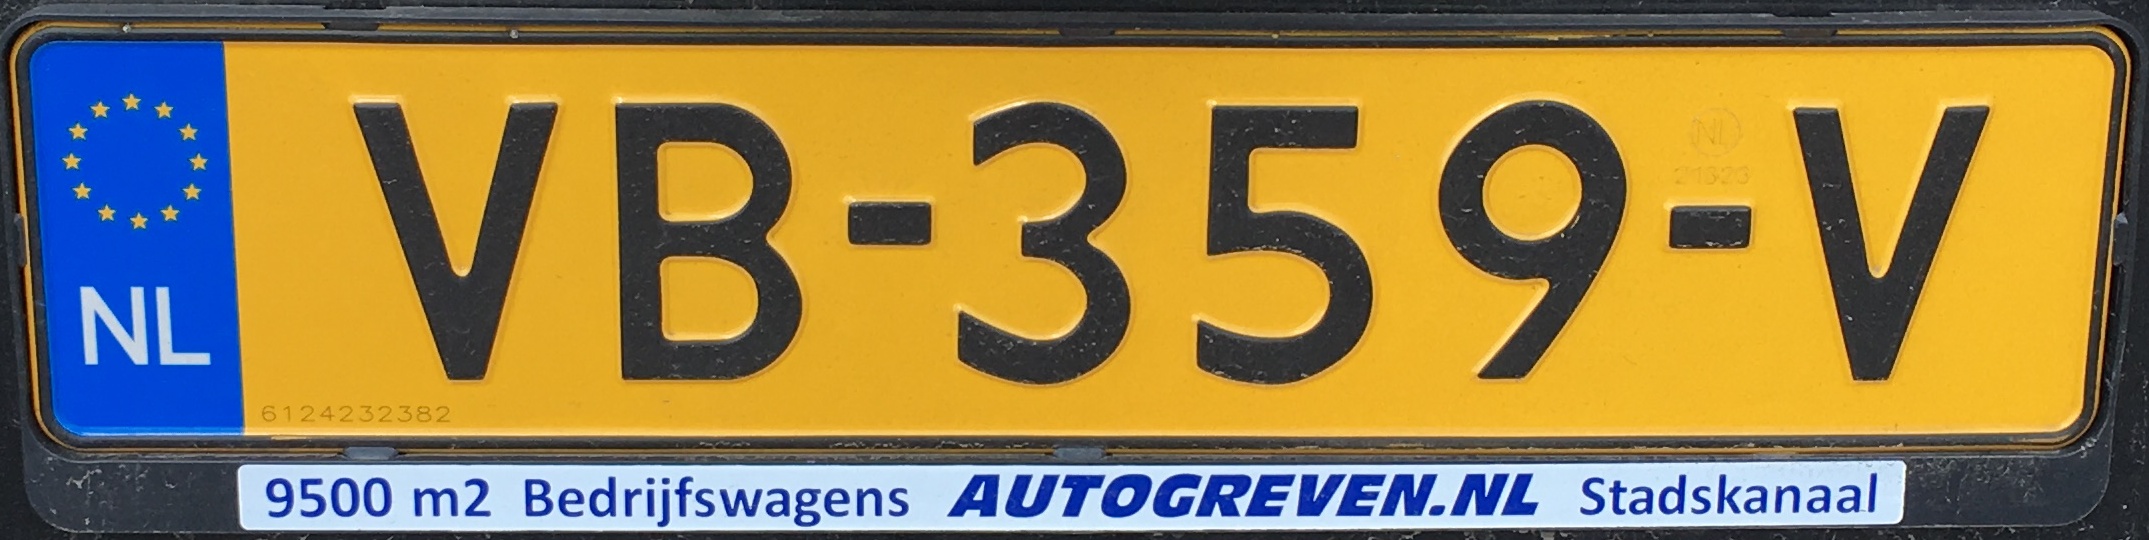 Nizozemská registrační značka – nákladní automobily nad 3,5 tuny, foto: vlastní